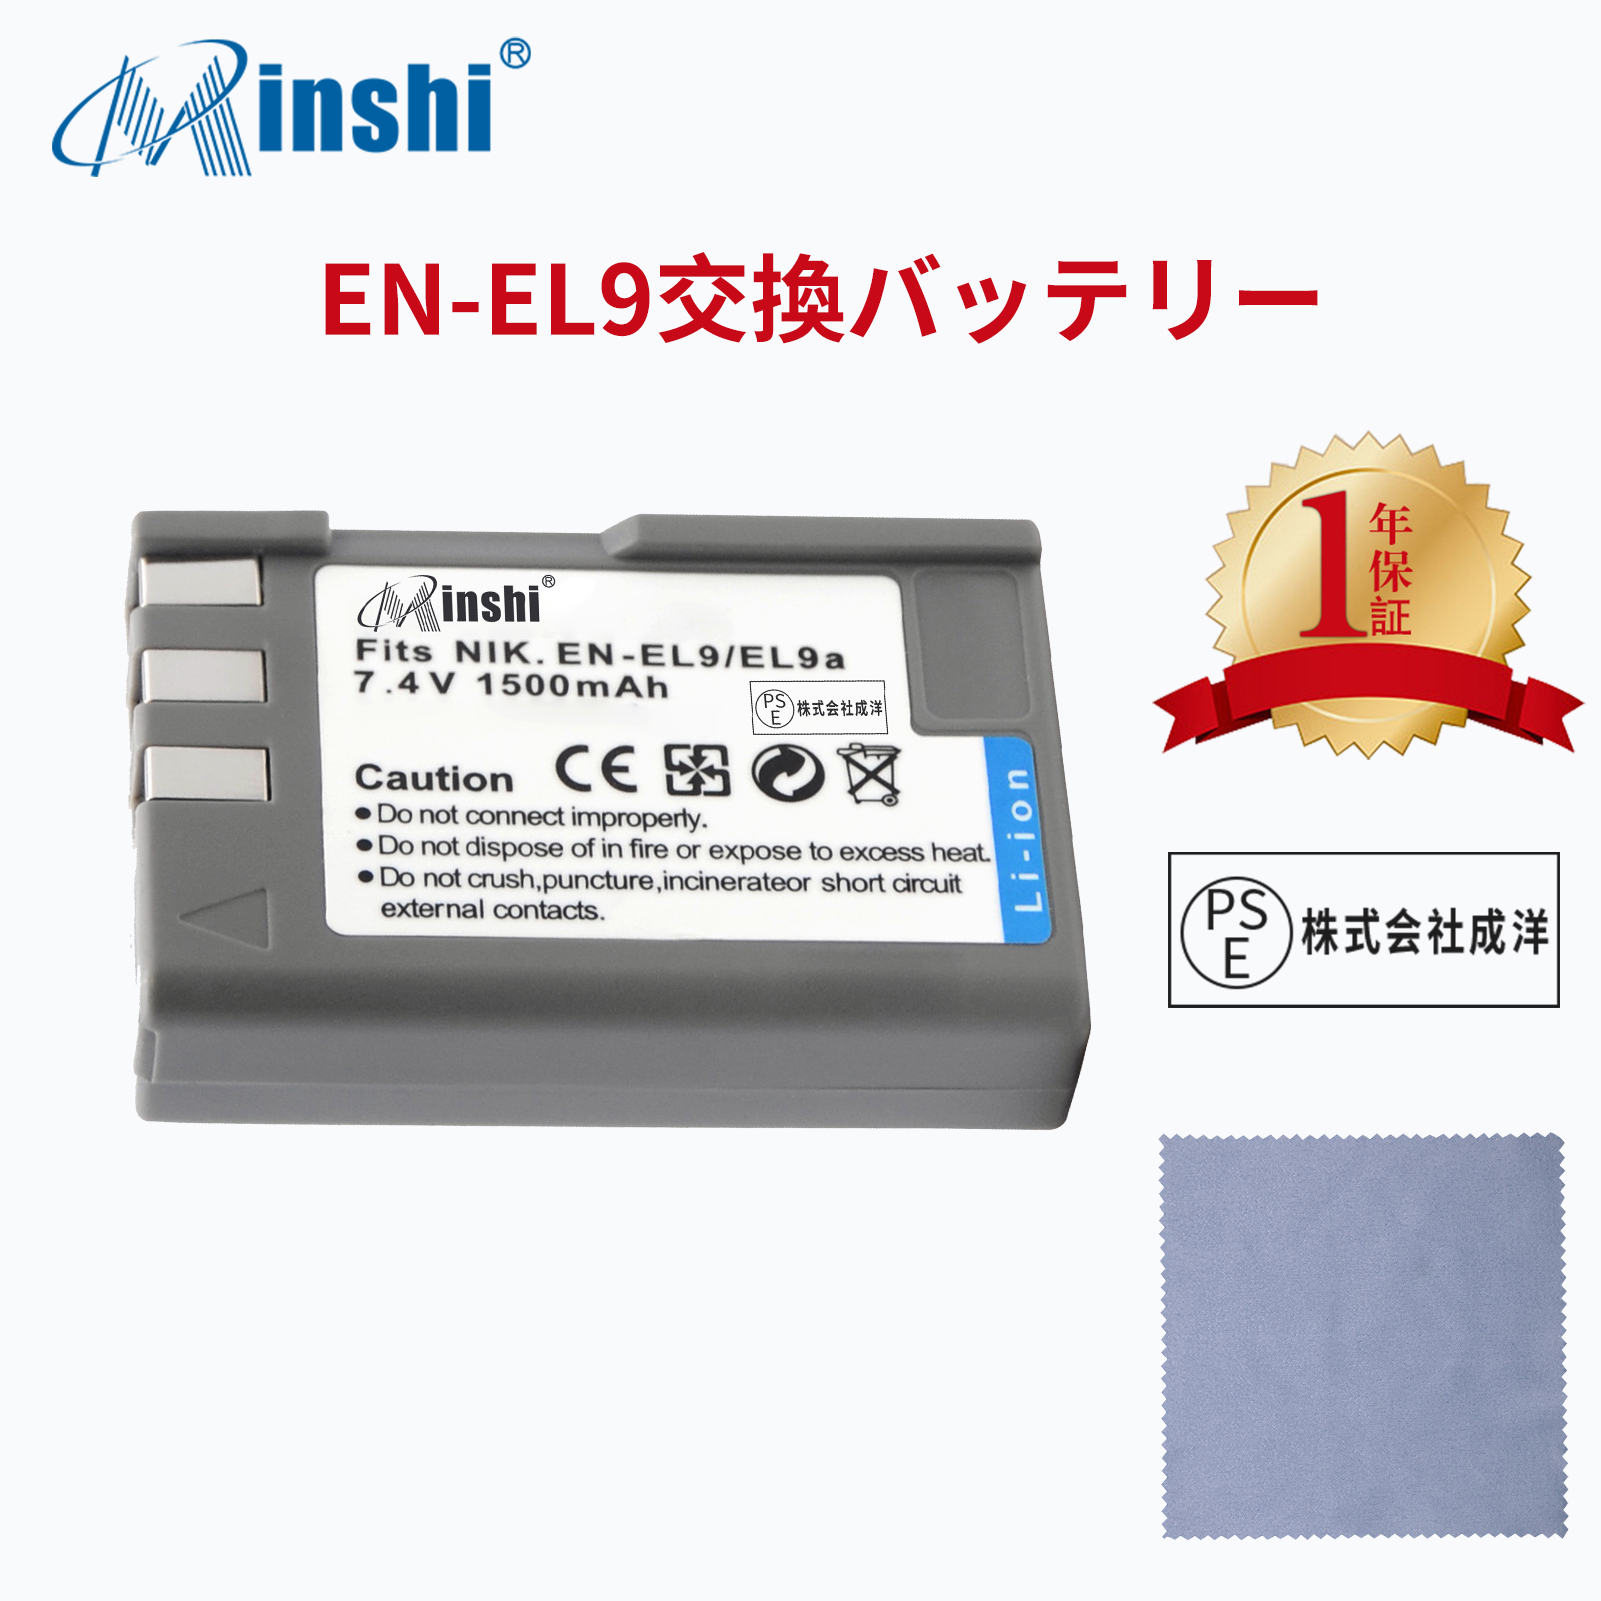 【クロス付き】 minshi NIKON D5000 EN-EL9a EN-EL9e 対応  1500mAh PSE認定済 高品質EN-EL9 EN-EL9a EN-EL9e互換バッテリーPHB